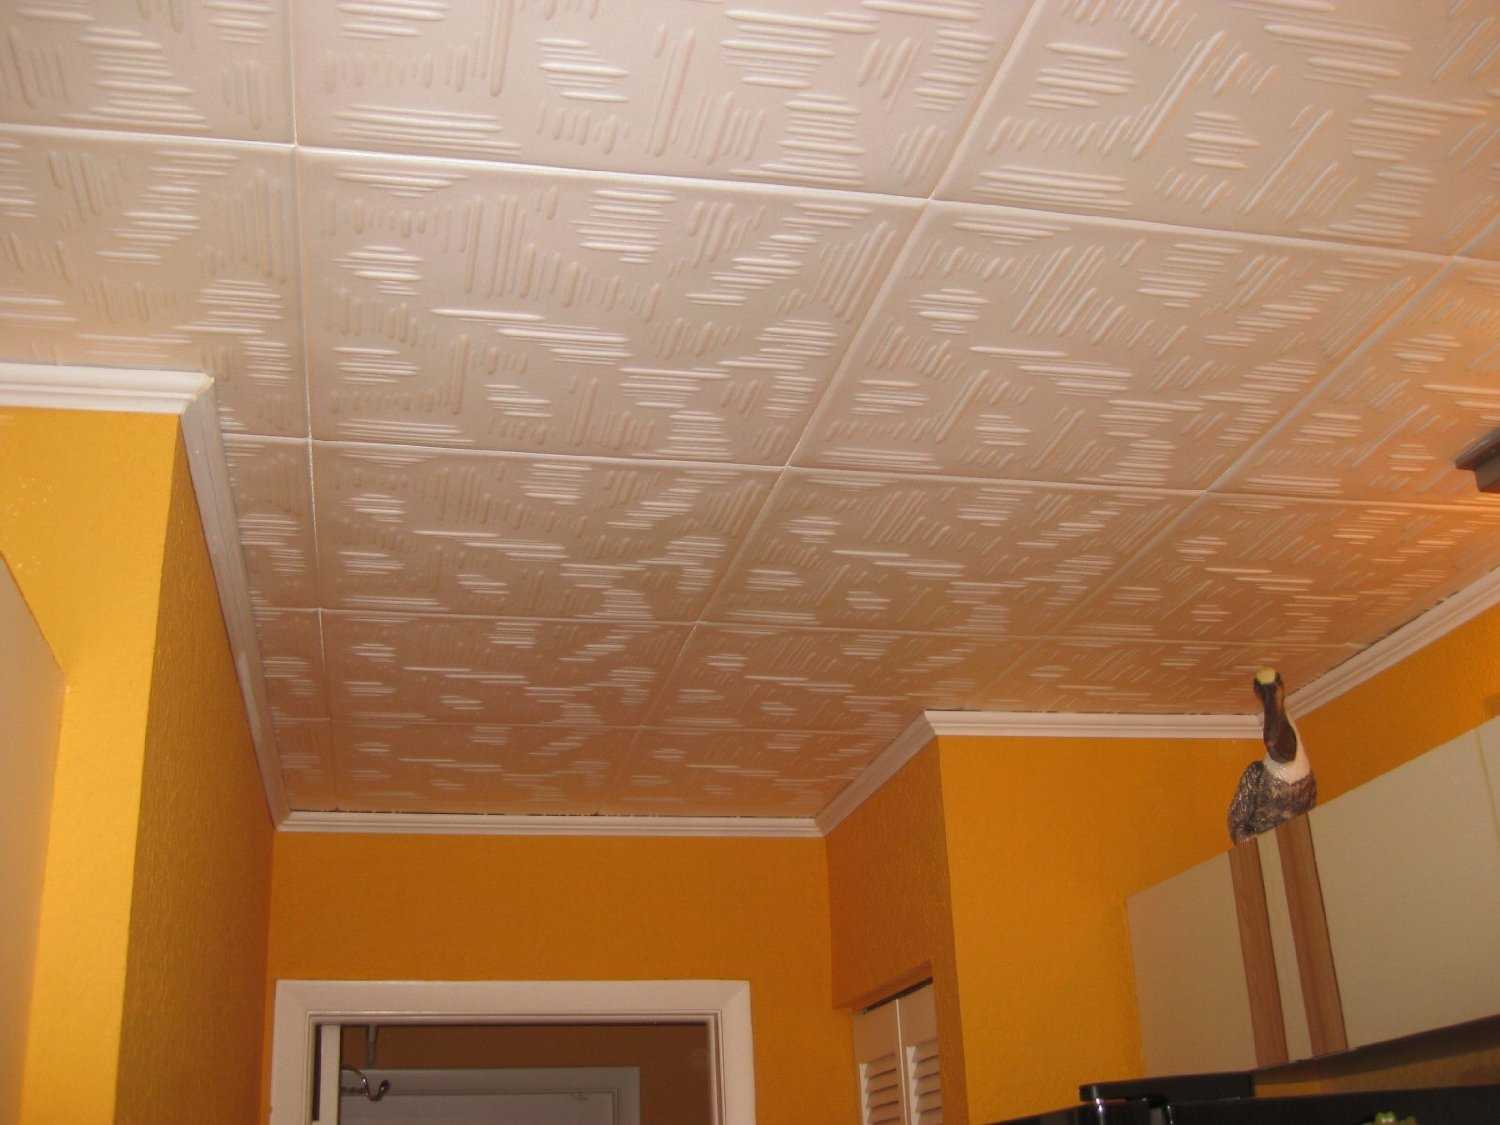 Натяжной потолок представляет собой конструкцию, состоящую из ПВХ покрытия, которое крепится между стенами."